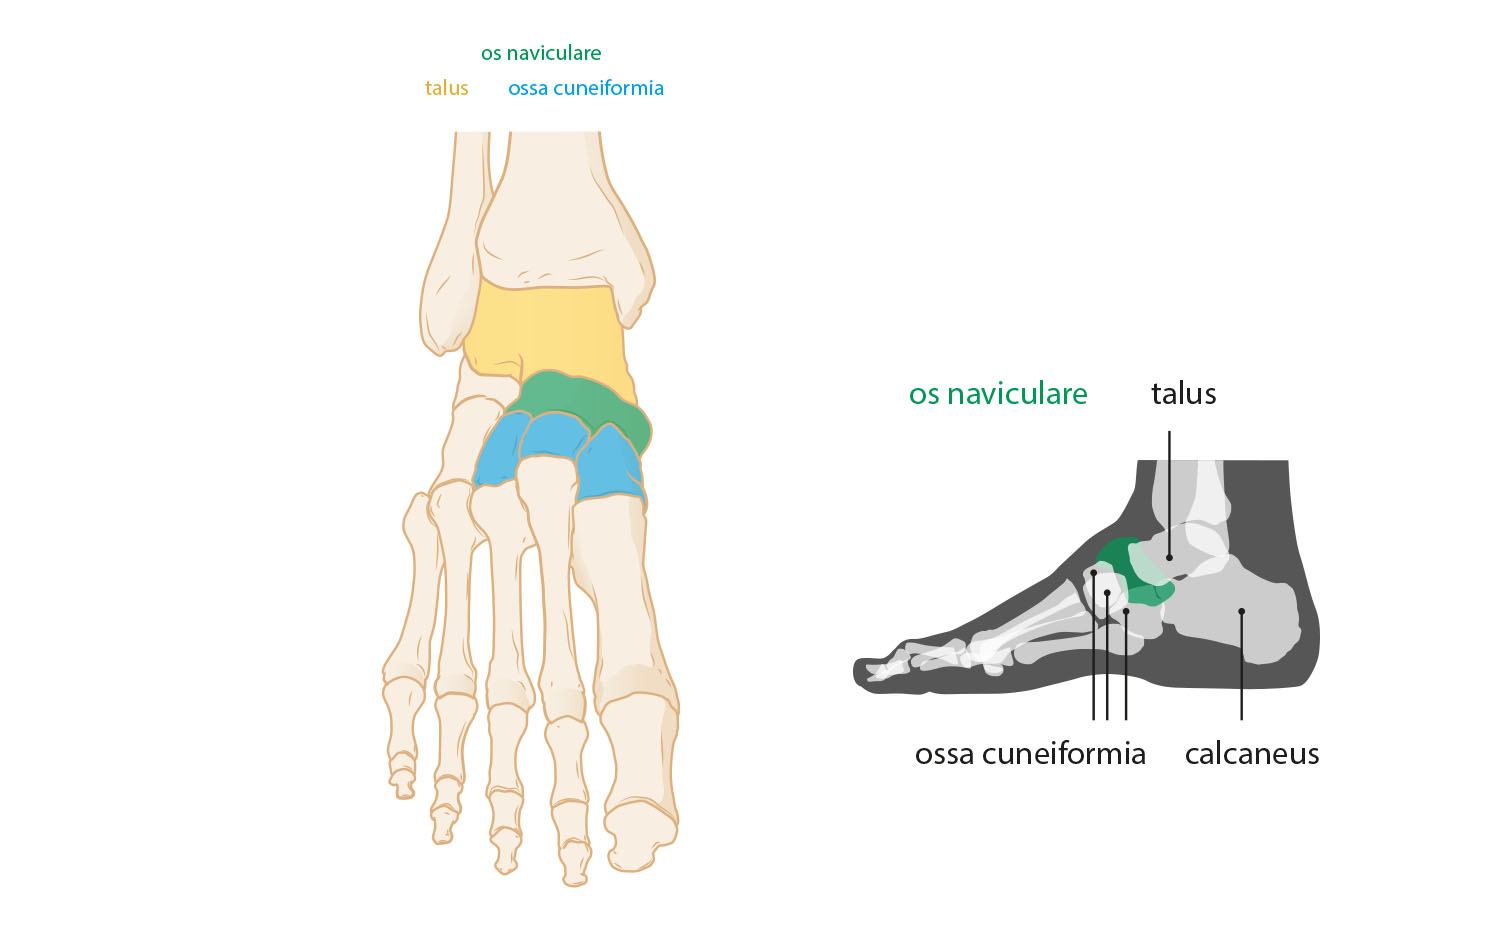 foot skeleton